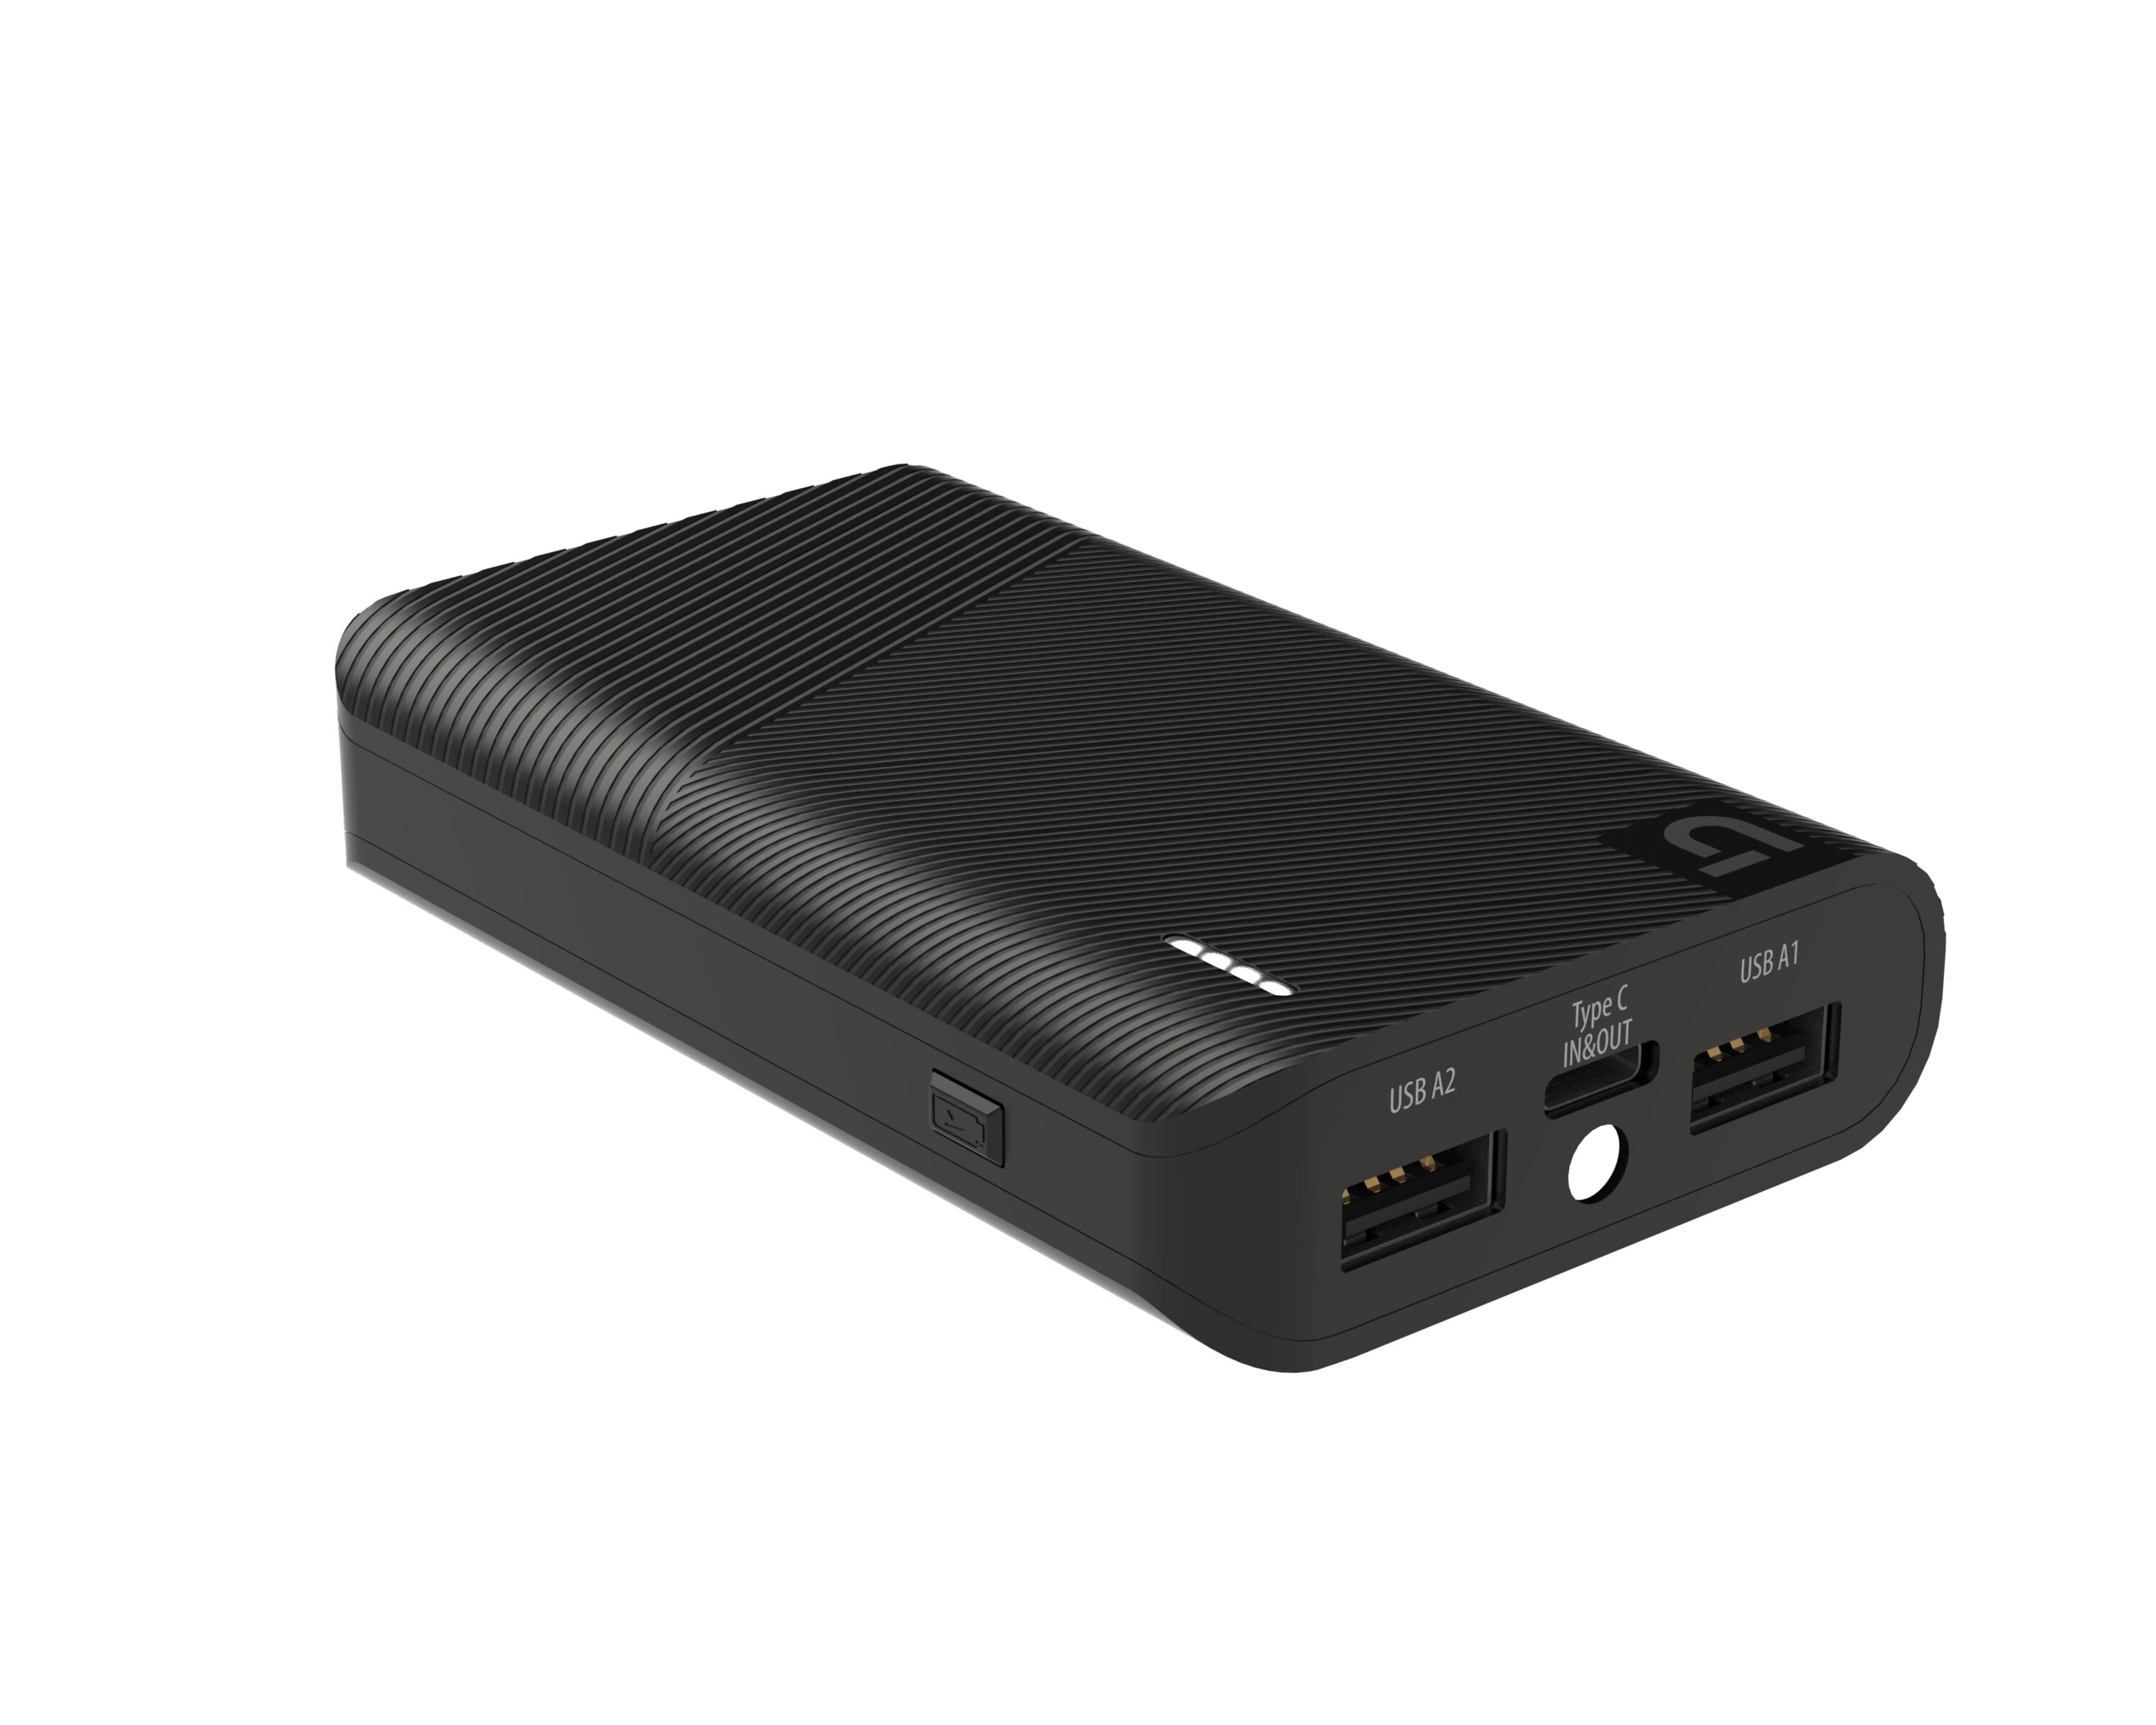 Utilitech USB A Power Bank 2